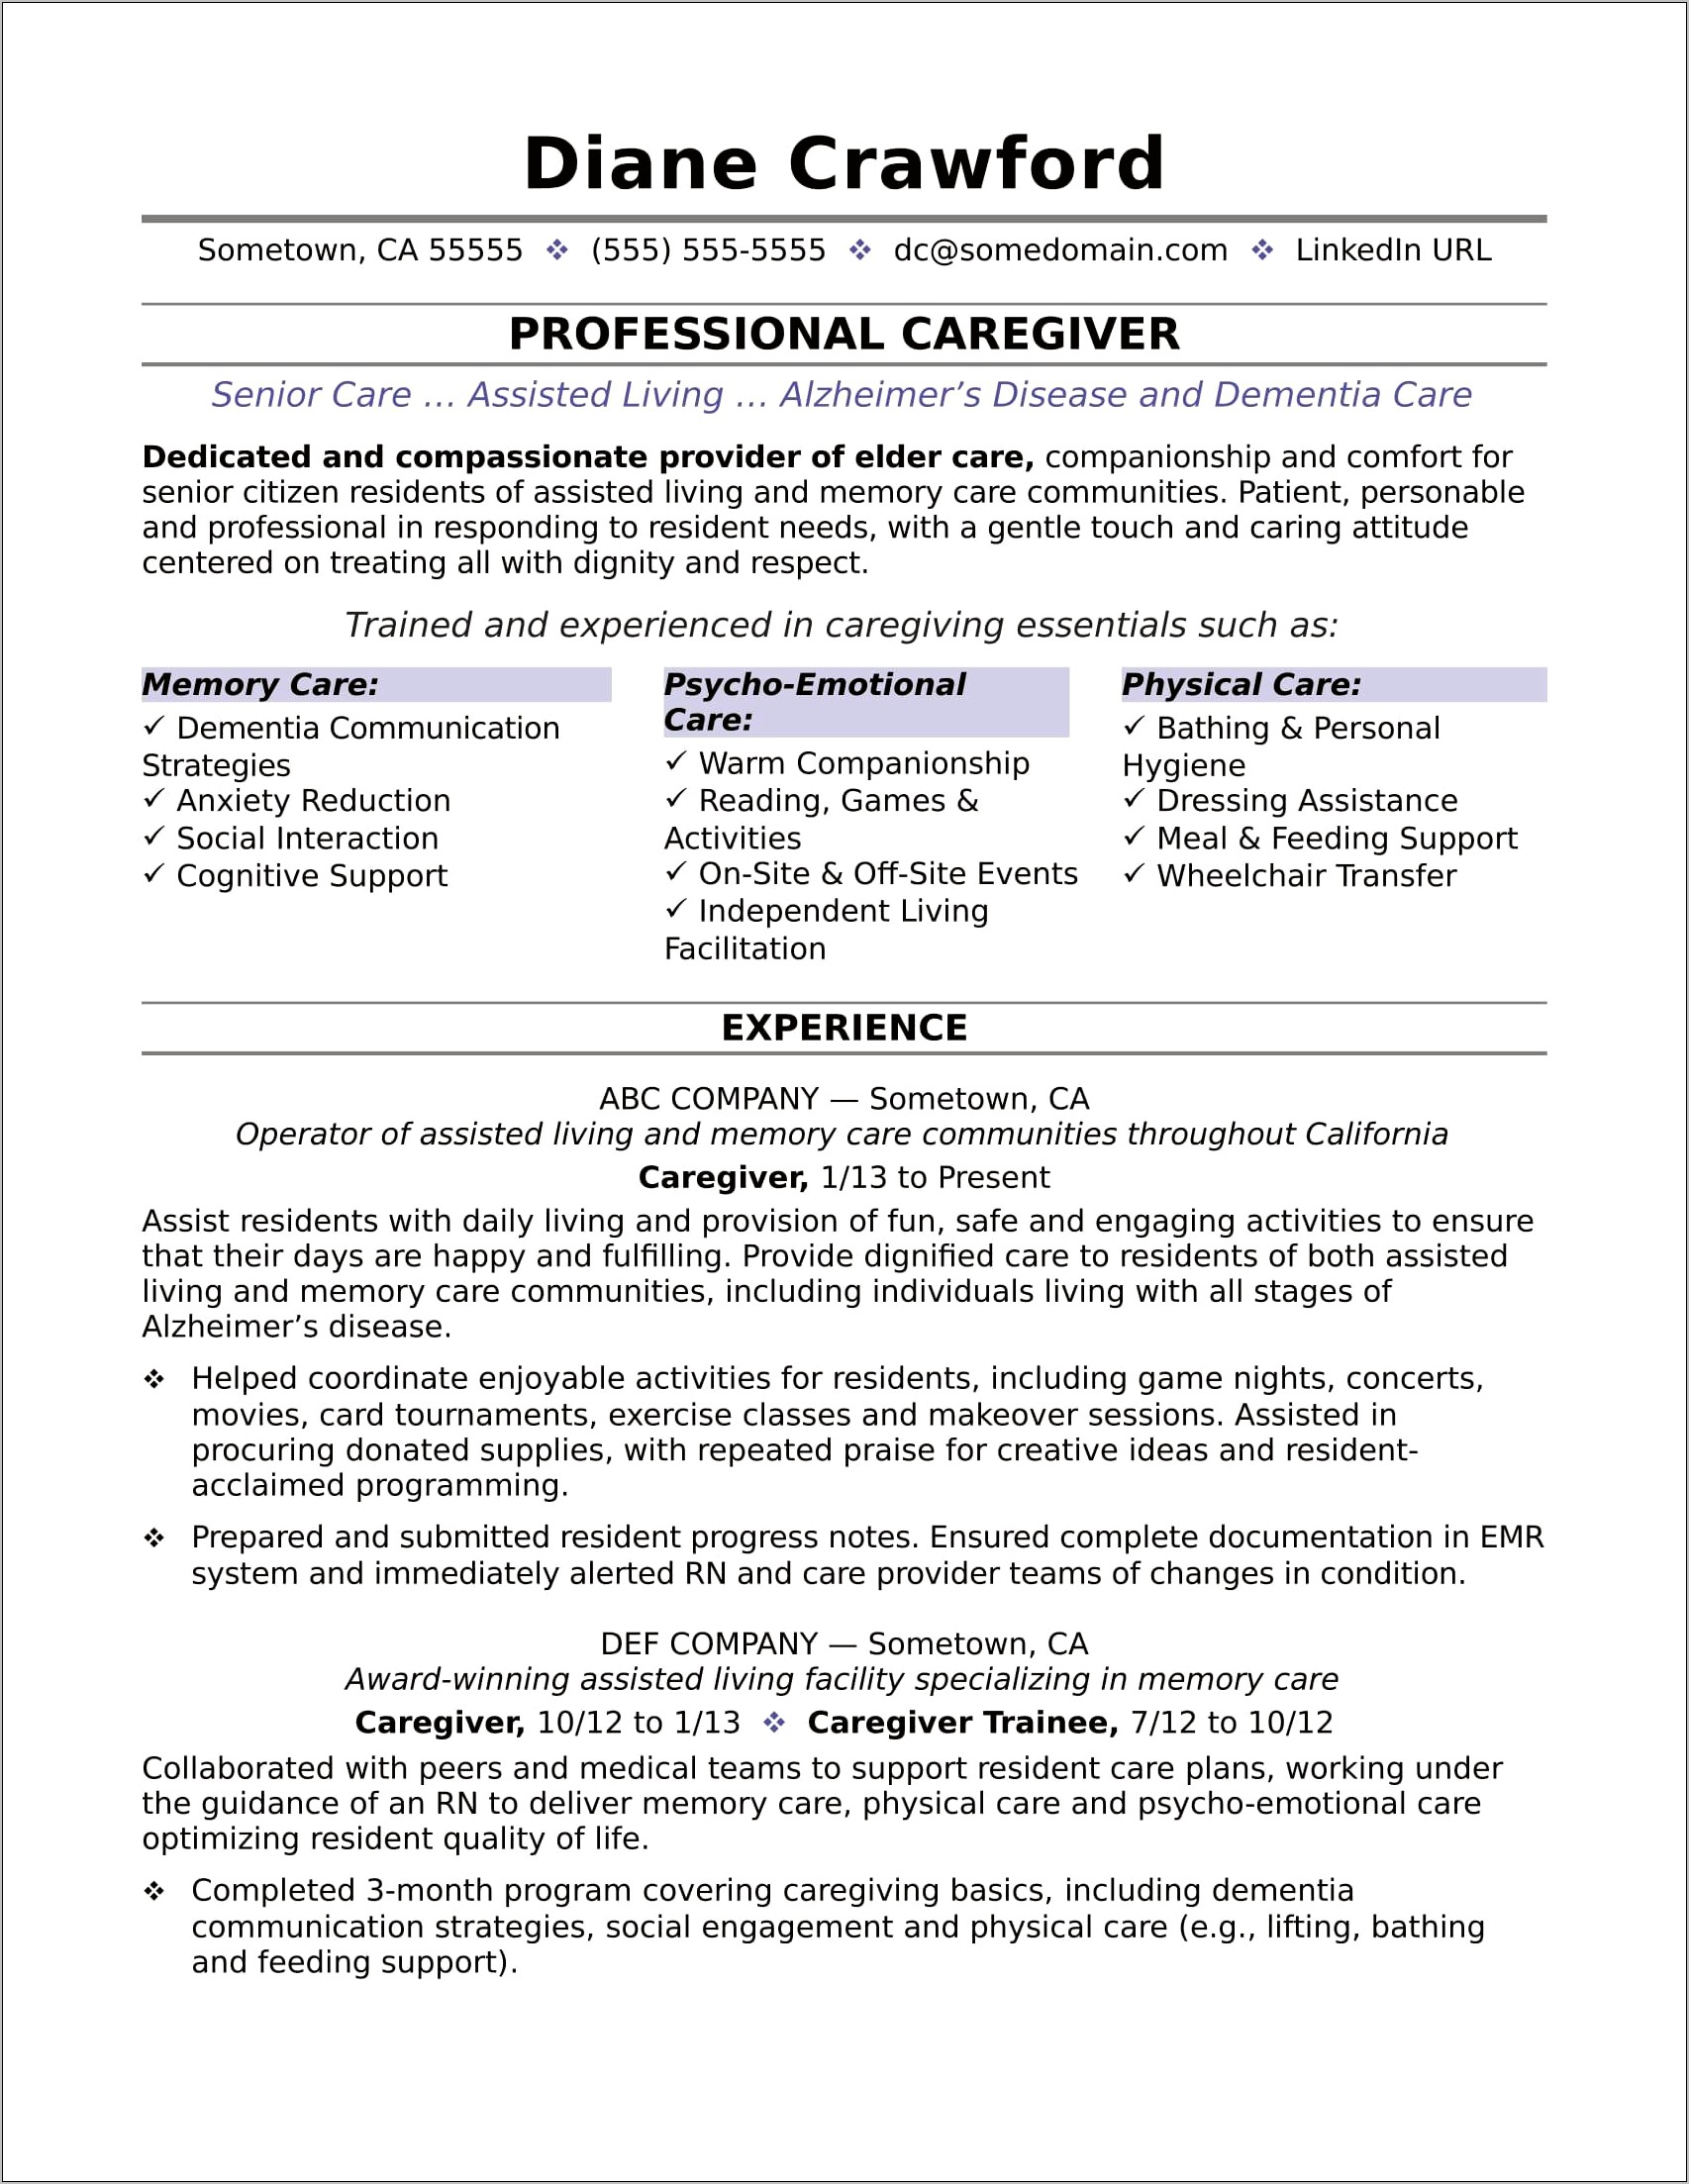 Personal Home Caregiver Job Description For Resume